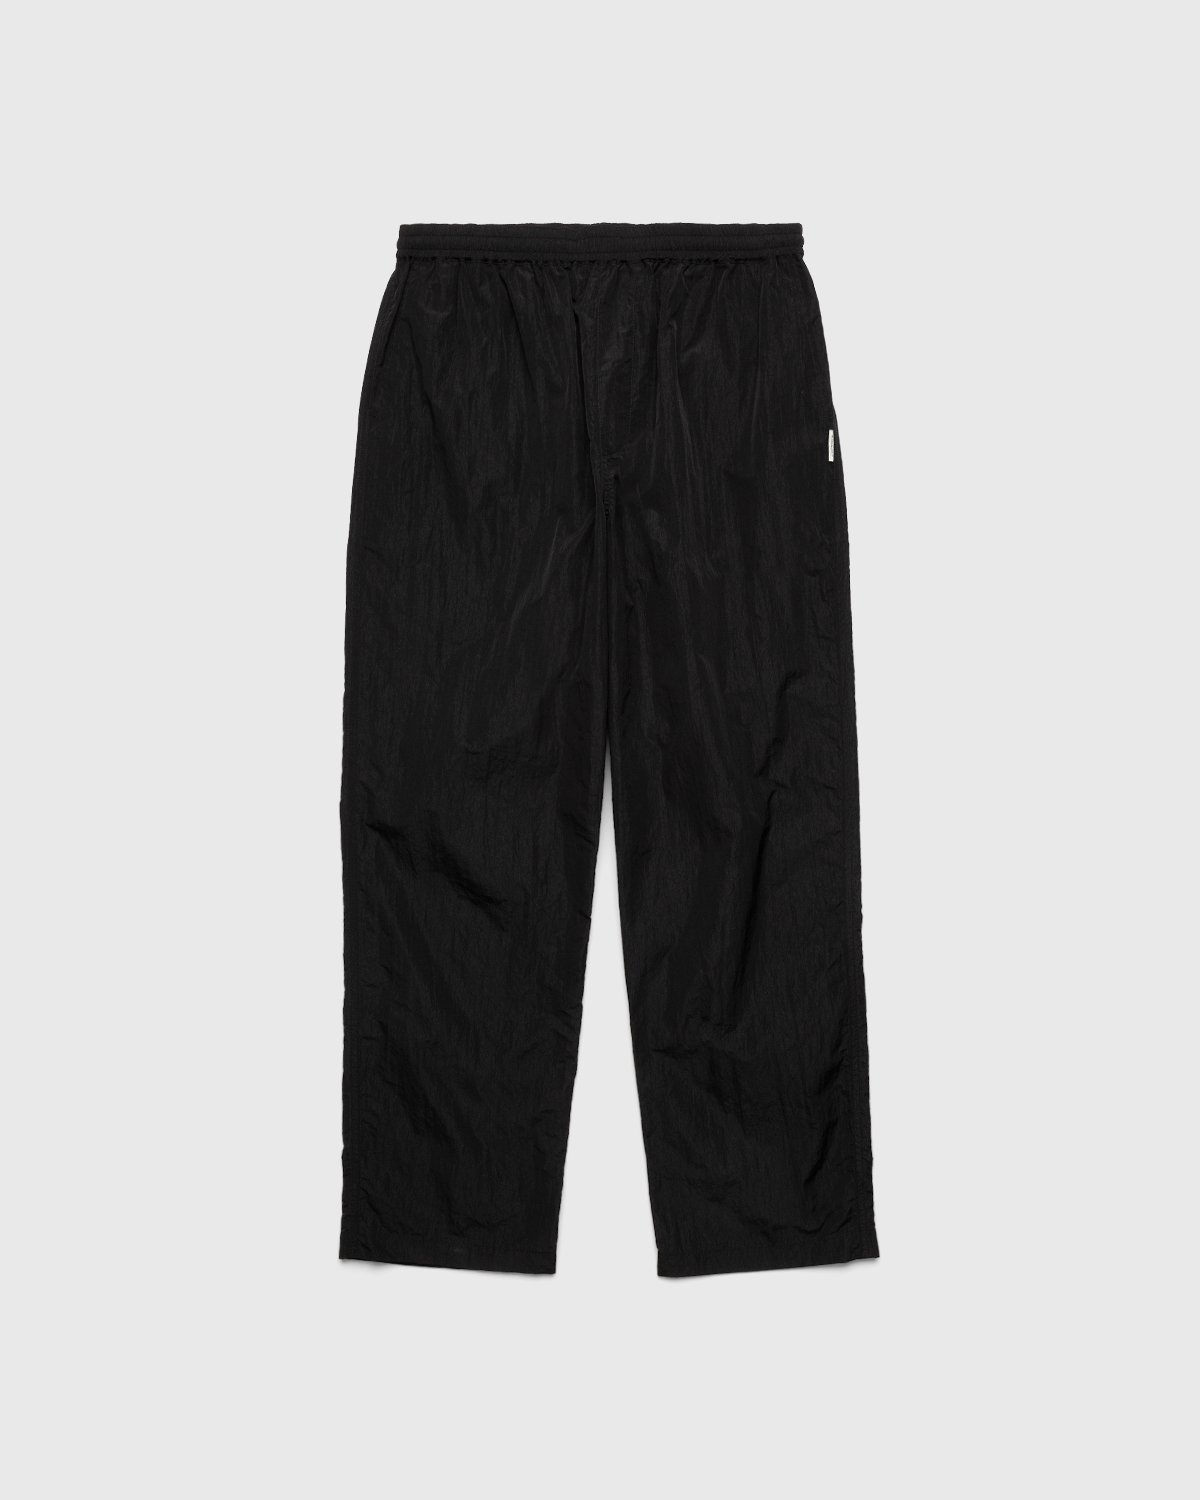 Highsnobiety - Crepe Nylon Elastic Pants Black - Clothing - Black - Image 1